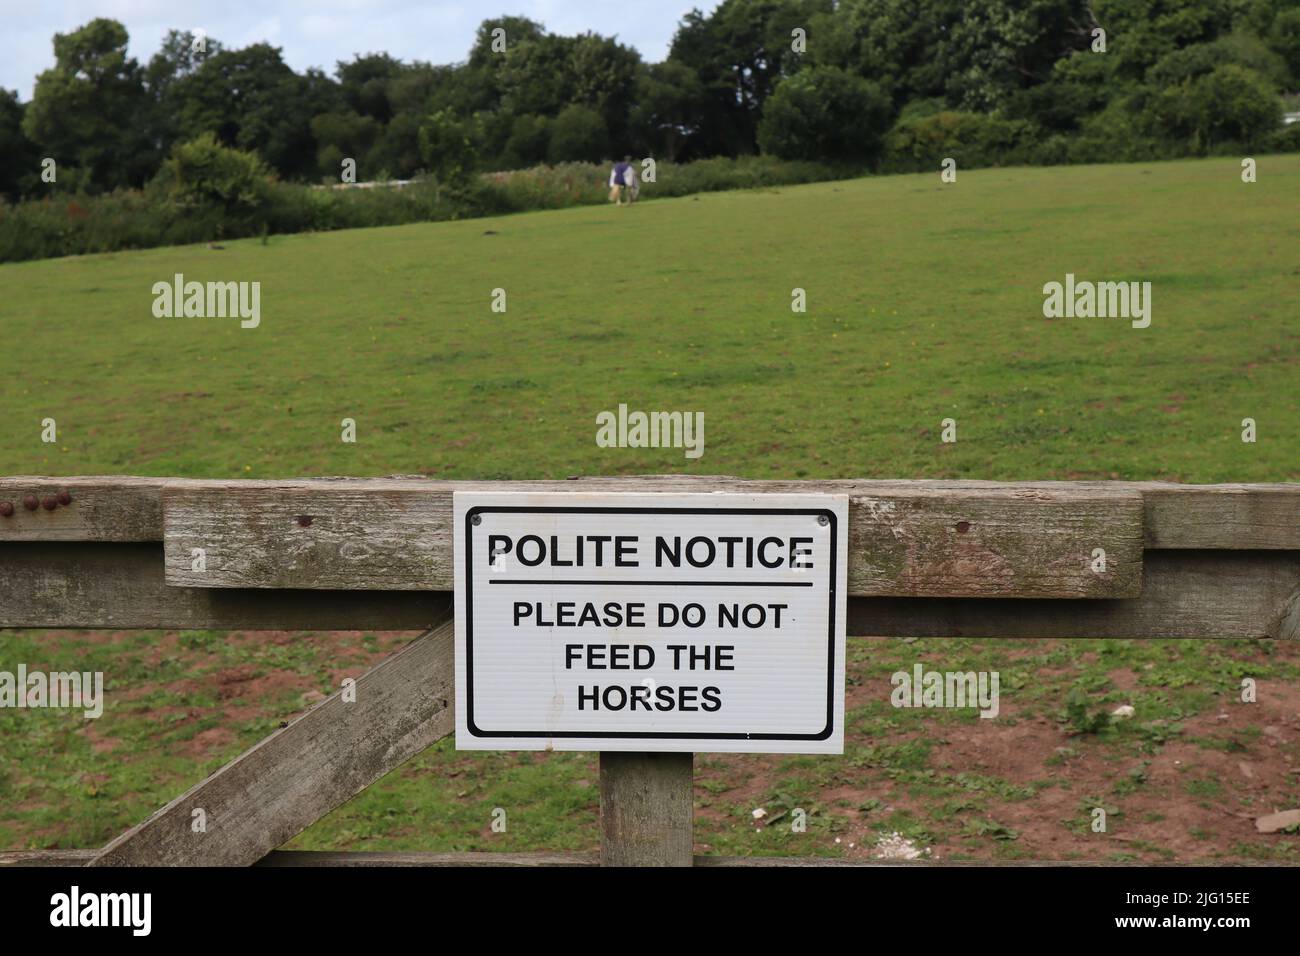 Panneau sur une porte de ferme disant poli avis s'il vous plaît ne pas nourrir les chevaux. Un cheval peut être vu en arrière-plan Banque D'Images